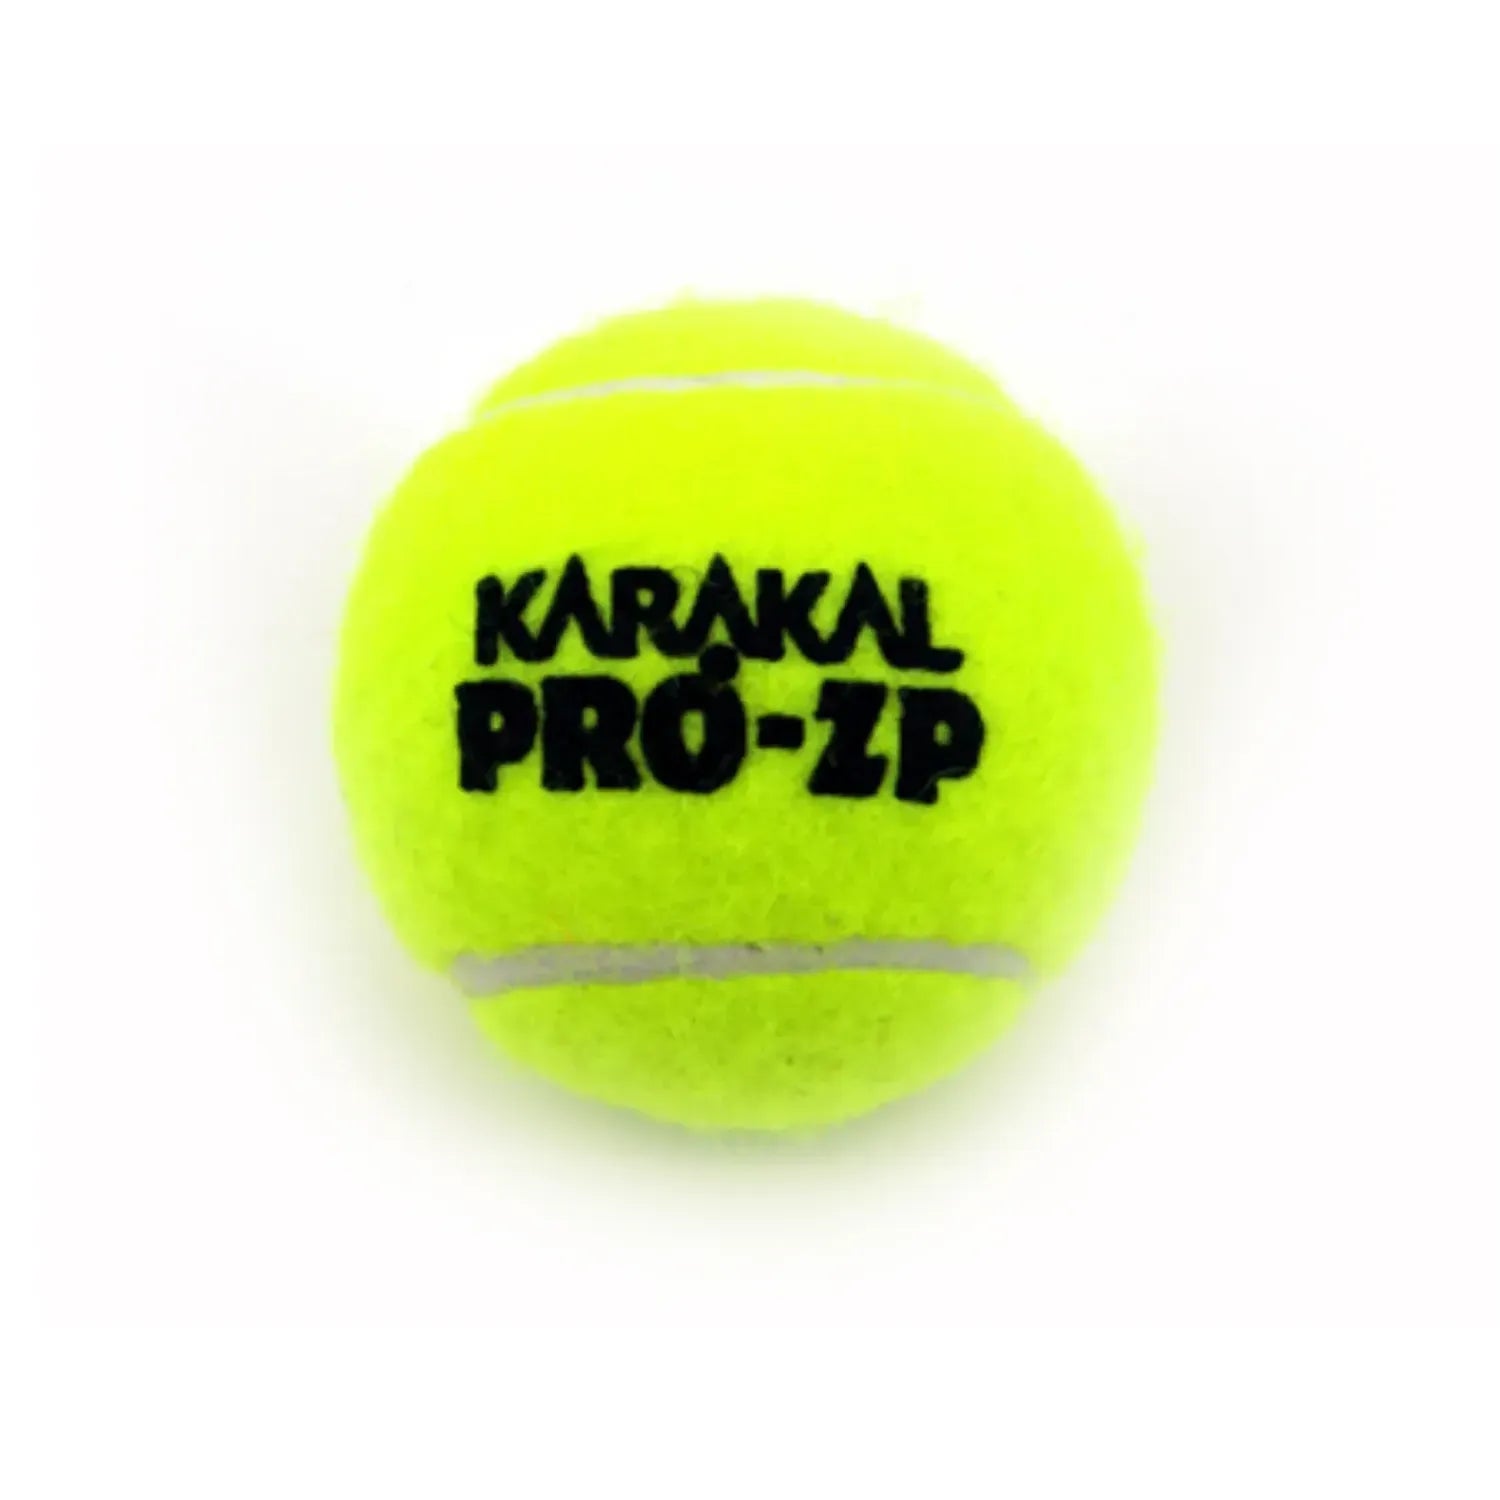 Karakal Pro ZP Coaching Tennis Ball